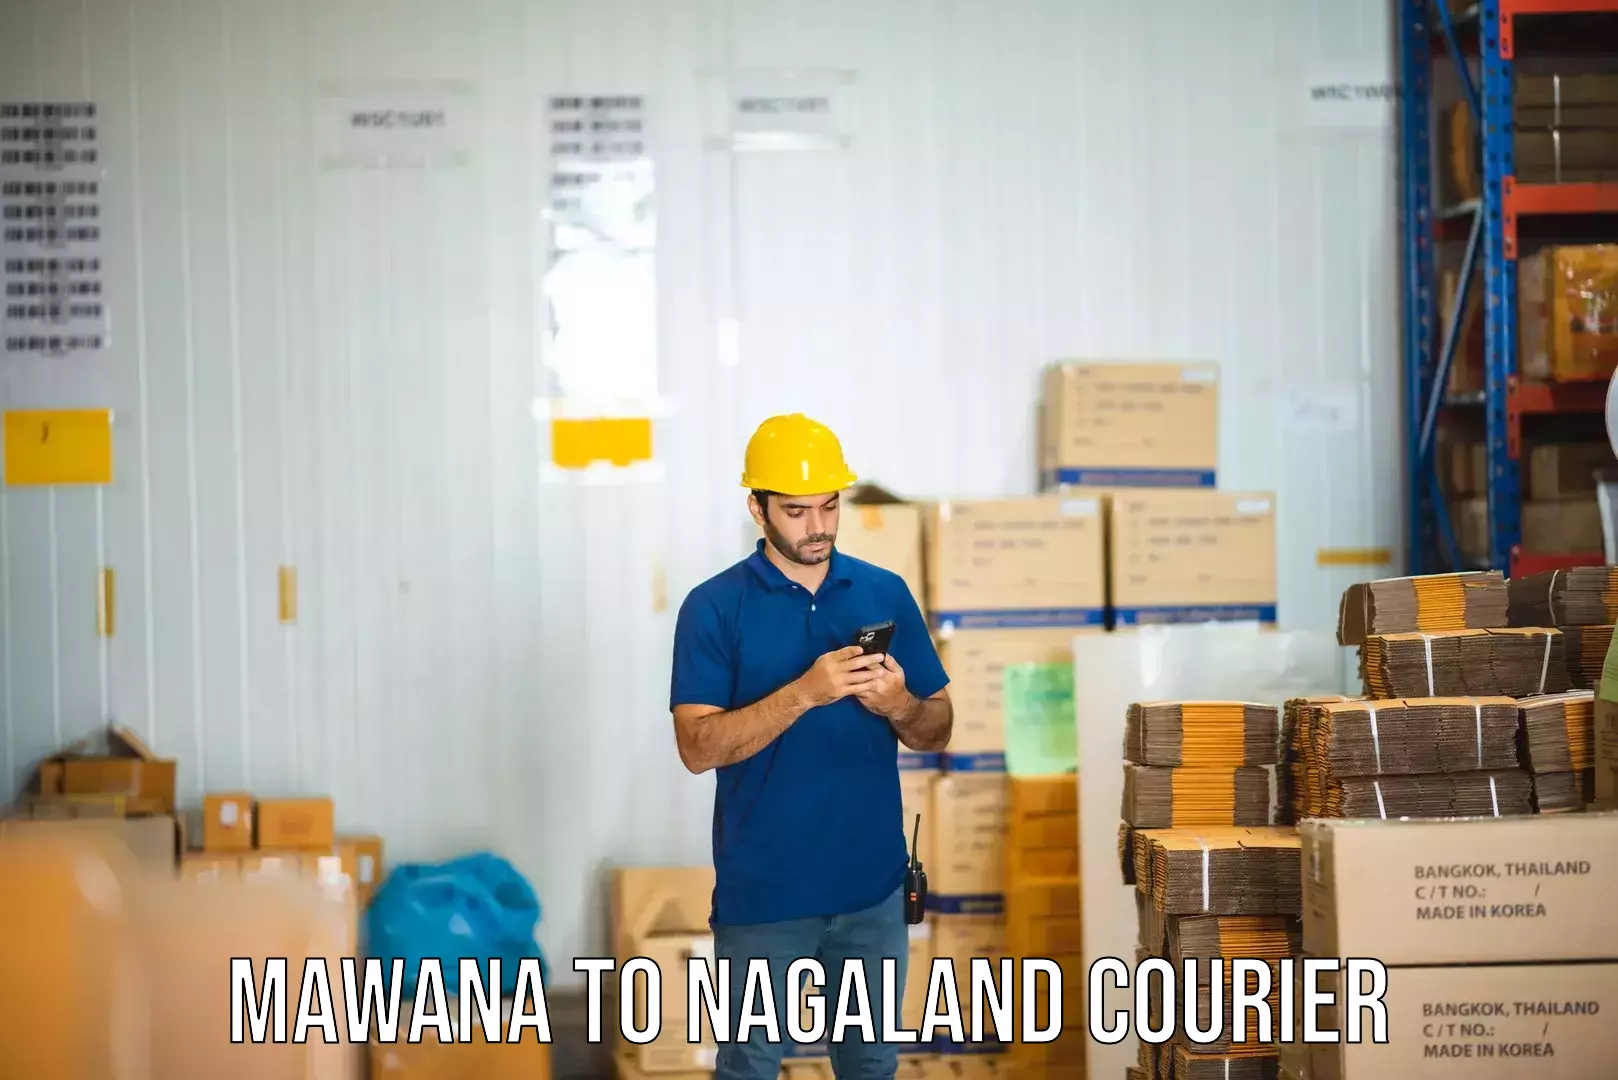 Affordable parcel rates Mawana to Nagaland